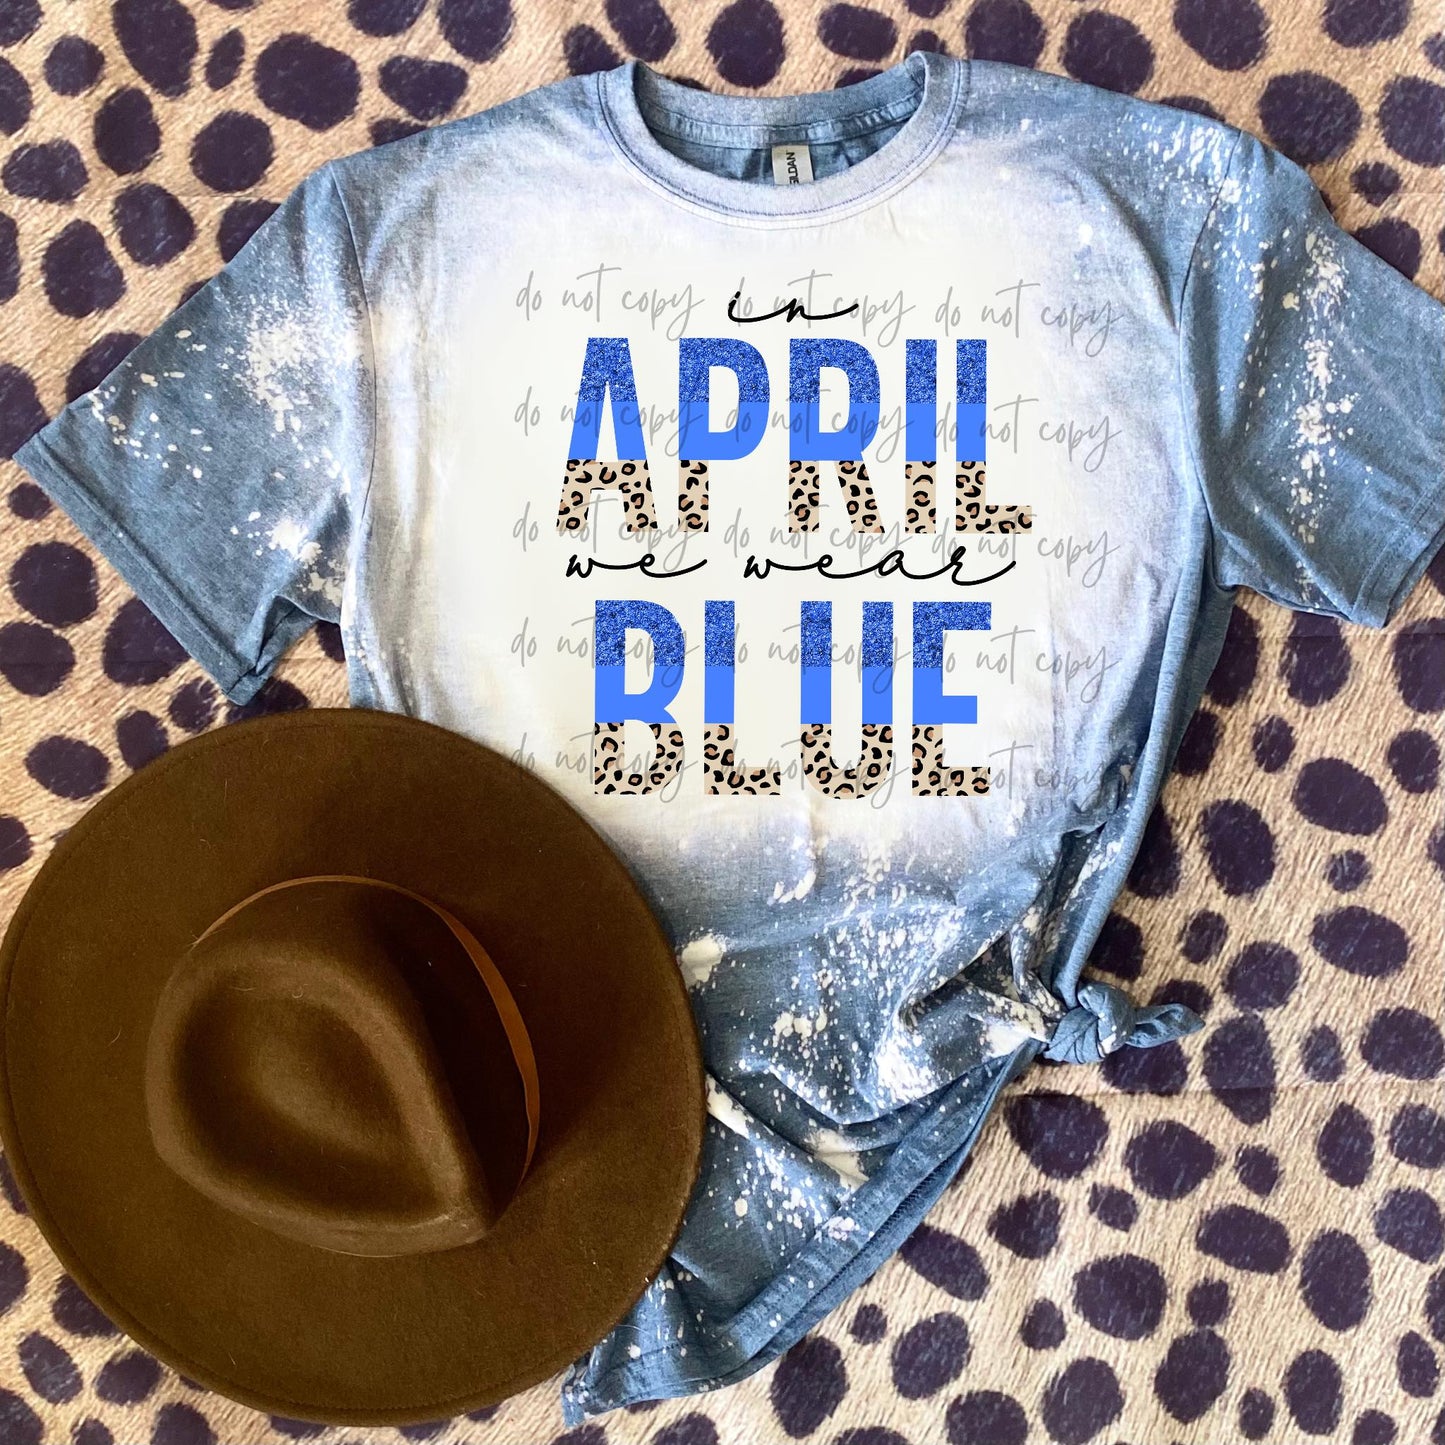 In April We Wear Blue